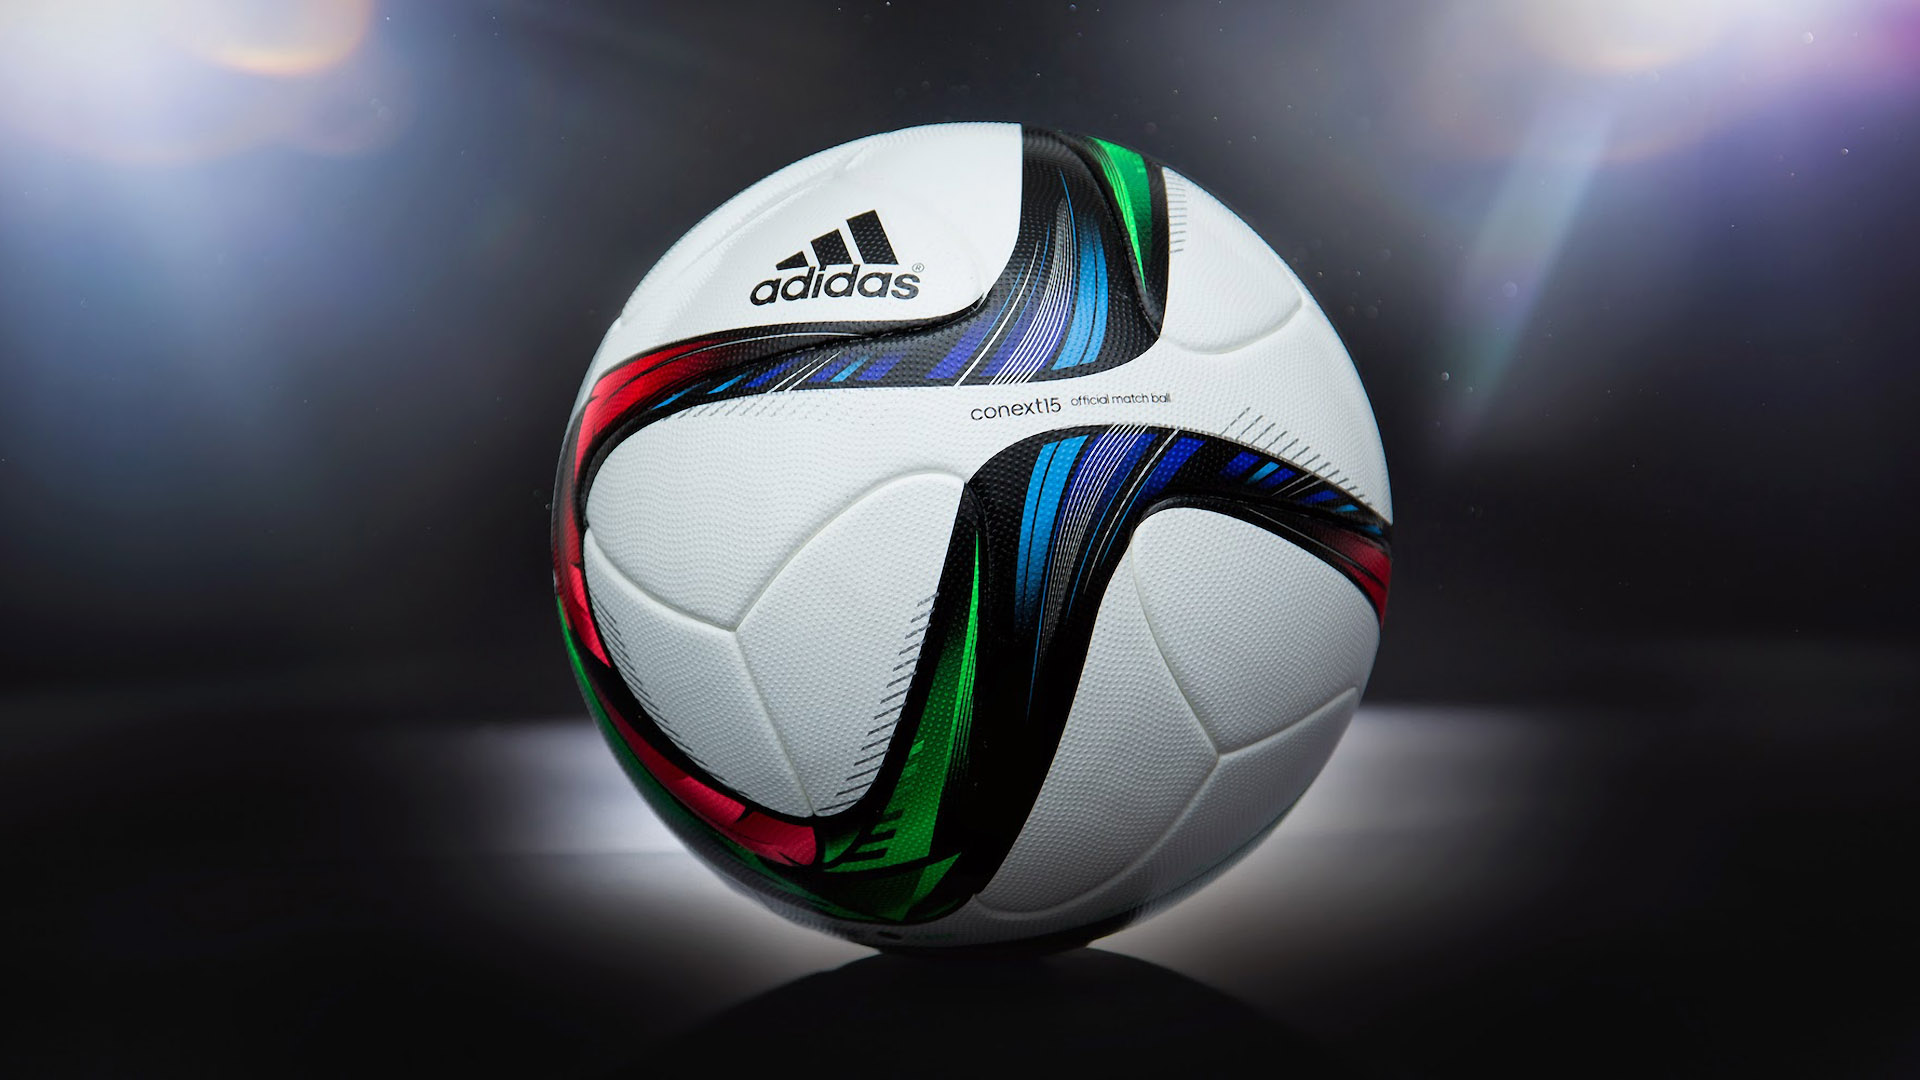 Adidas Soccer Ball Wallpaper HD Px